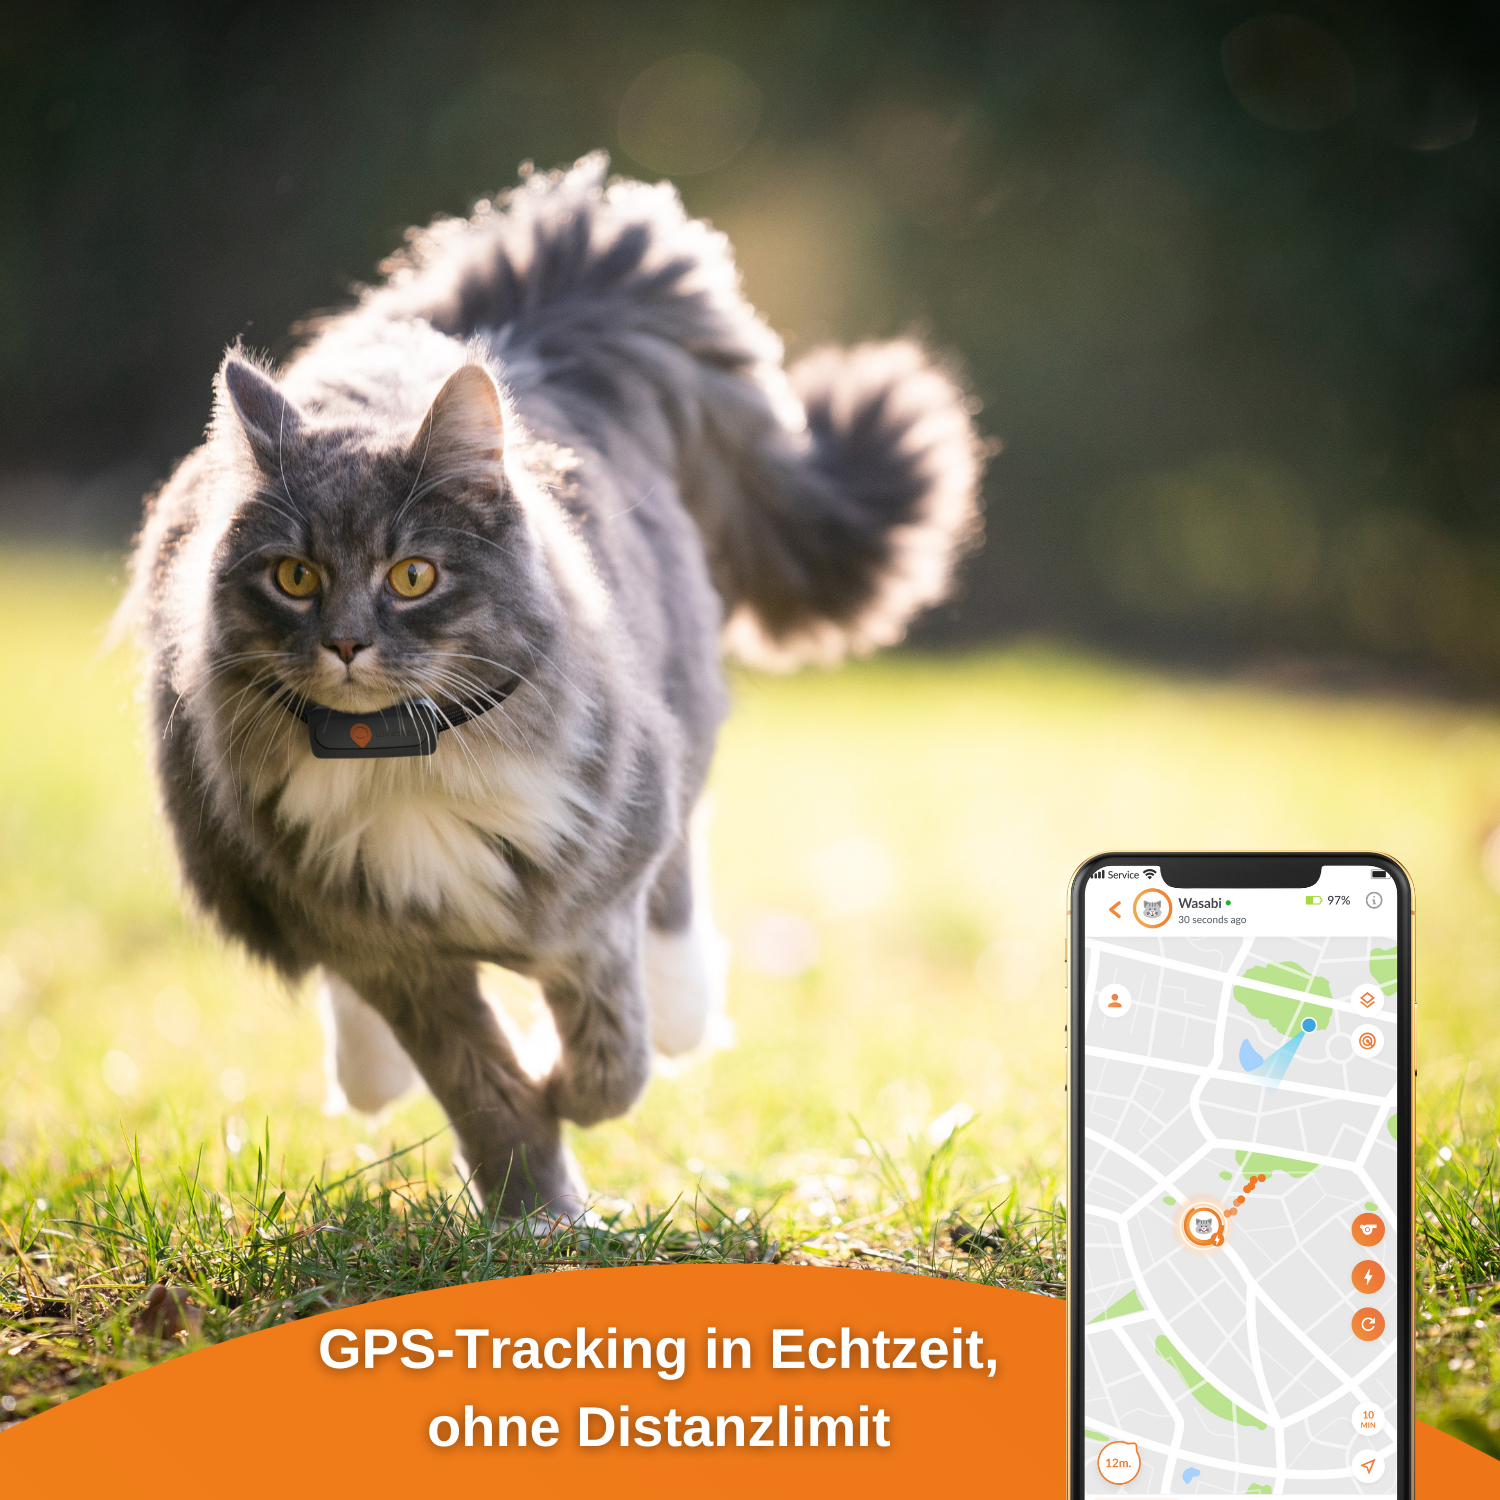 WEENECT Cat Tracker GPS für Katze XS